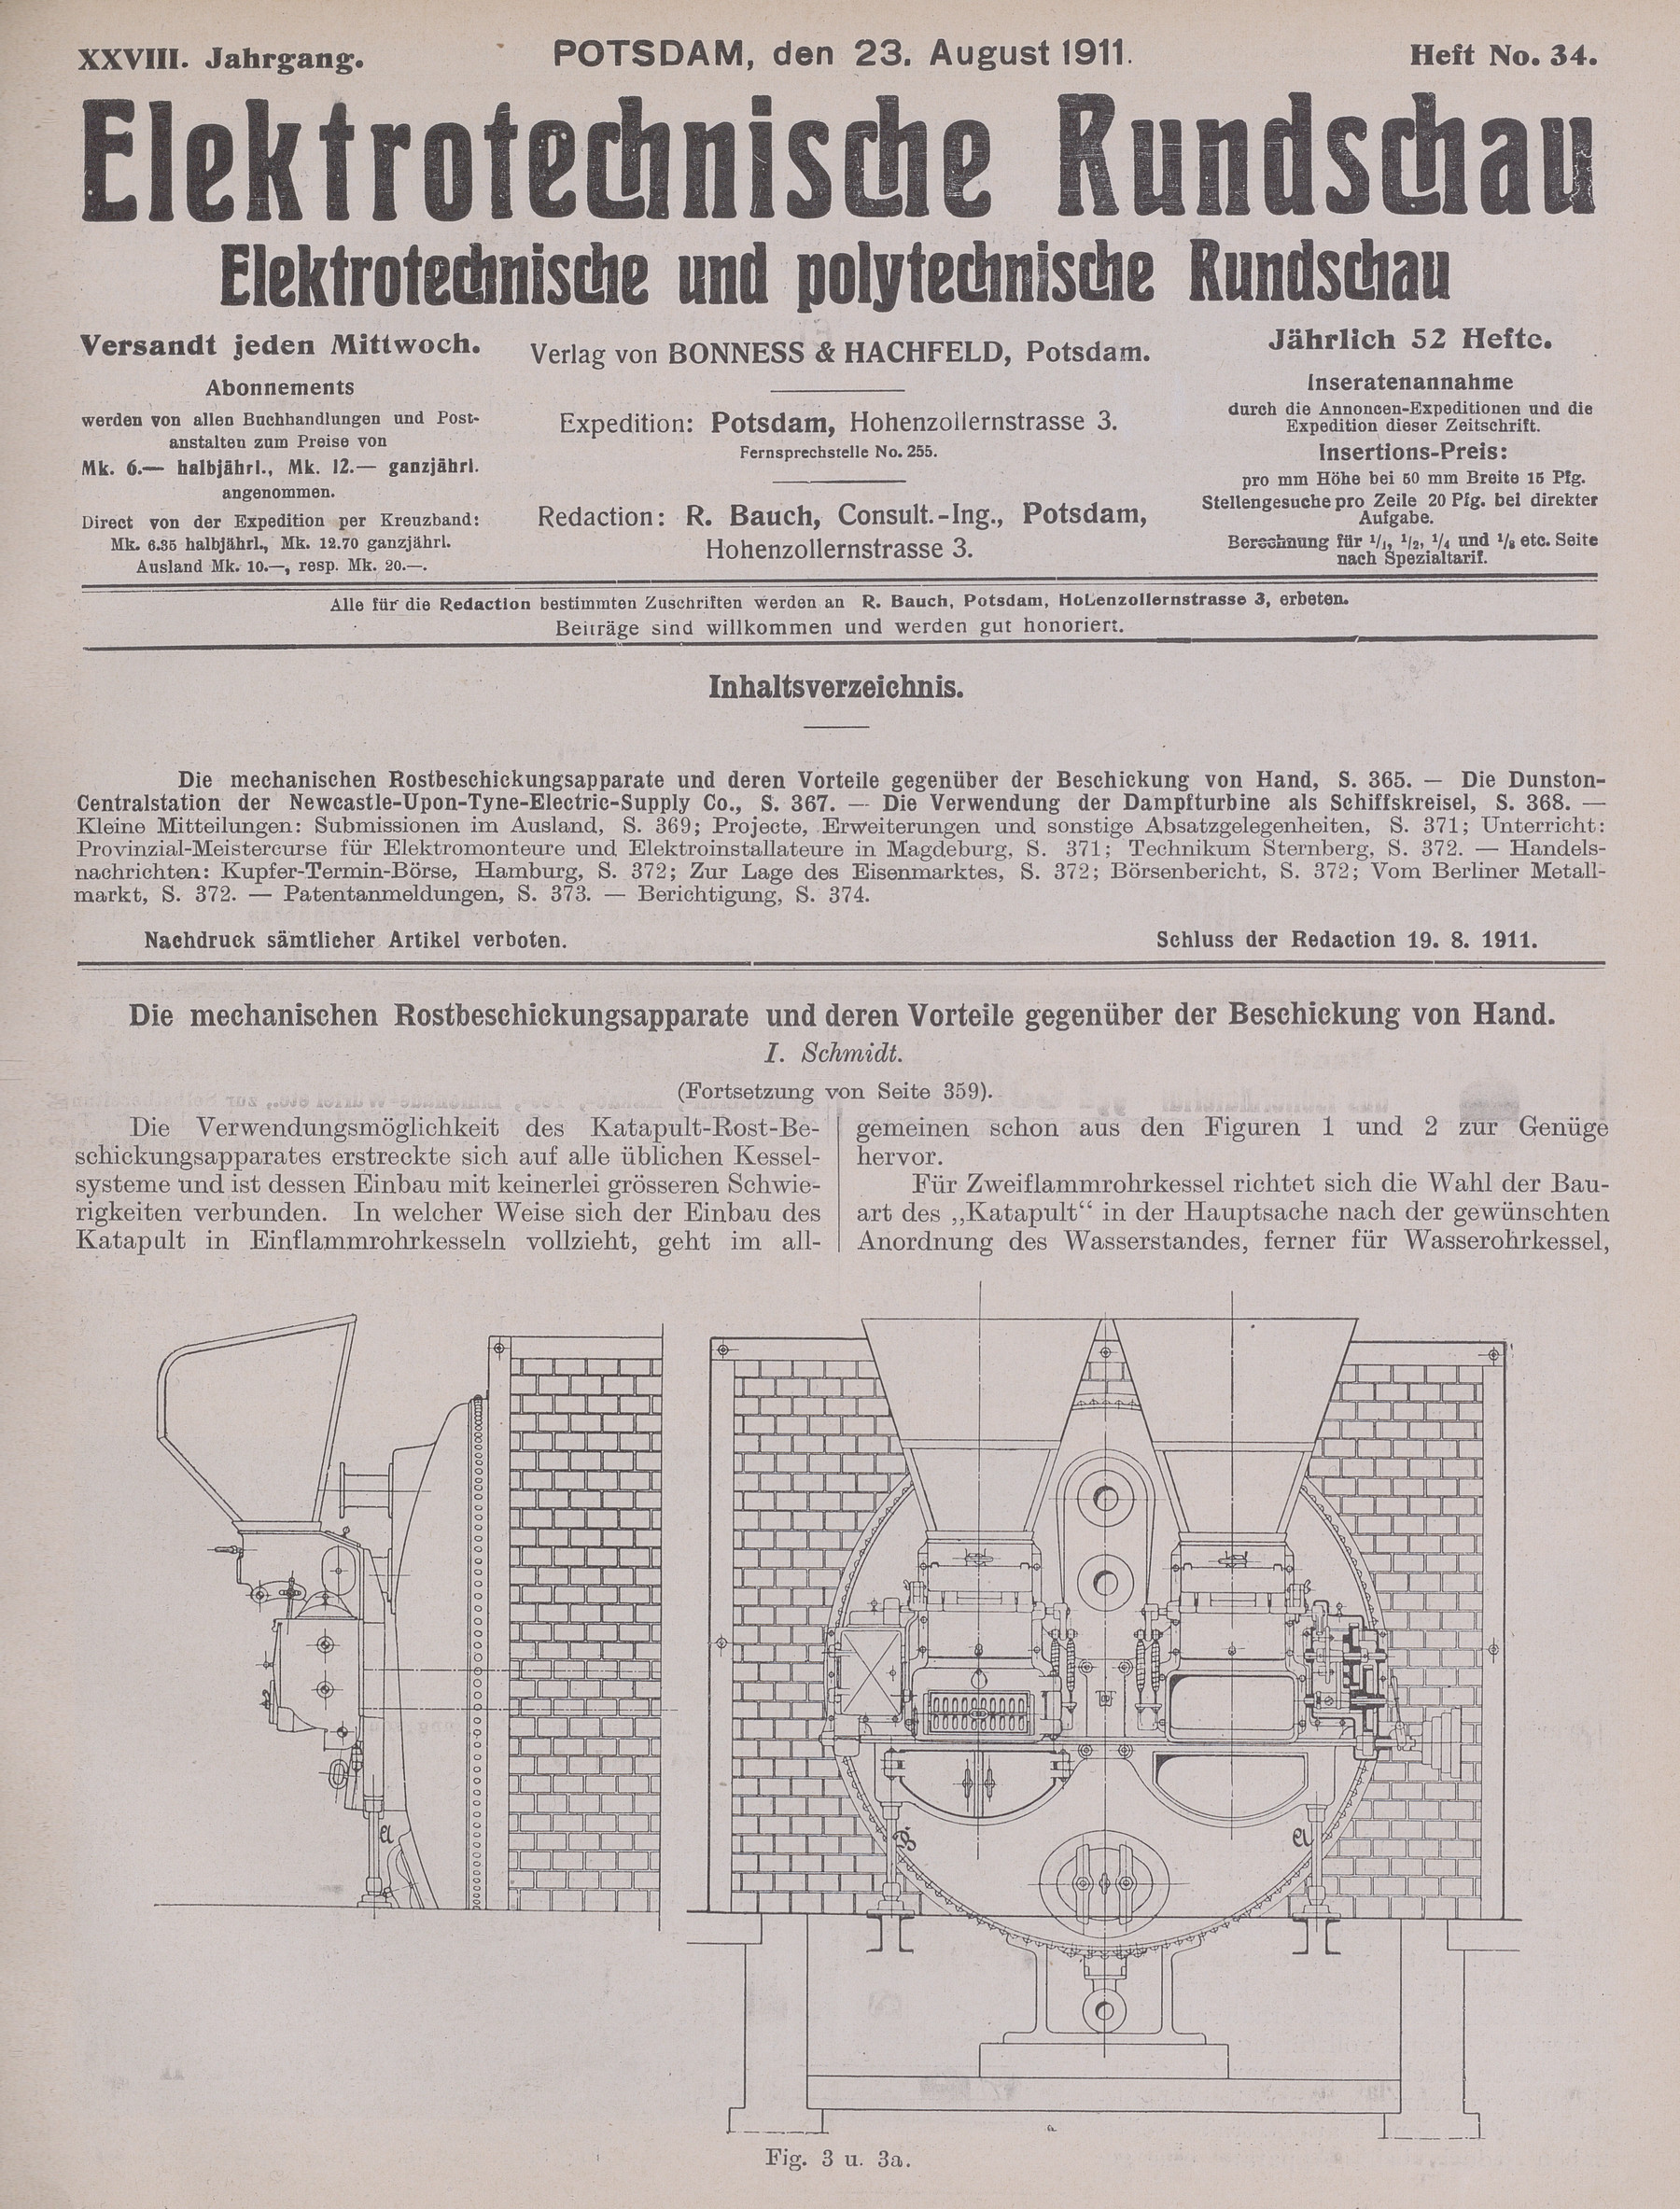 Elektrotechnische Rundschau : Elektrotechnische und polytechnische Rundschau, XXVIII. Jahrgang, Heft No. 34